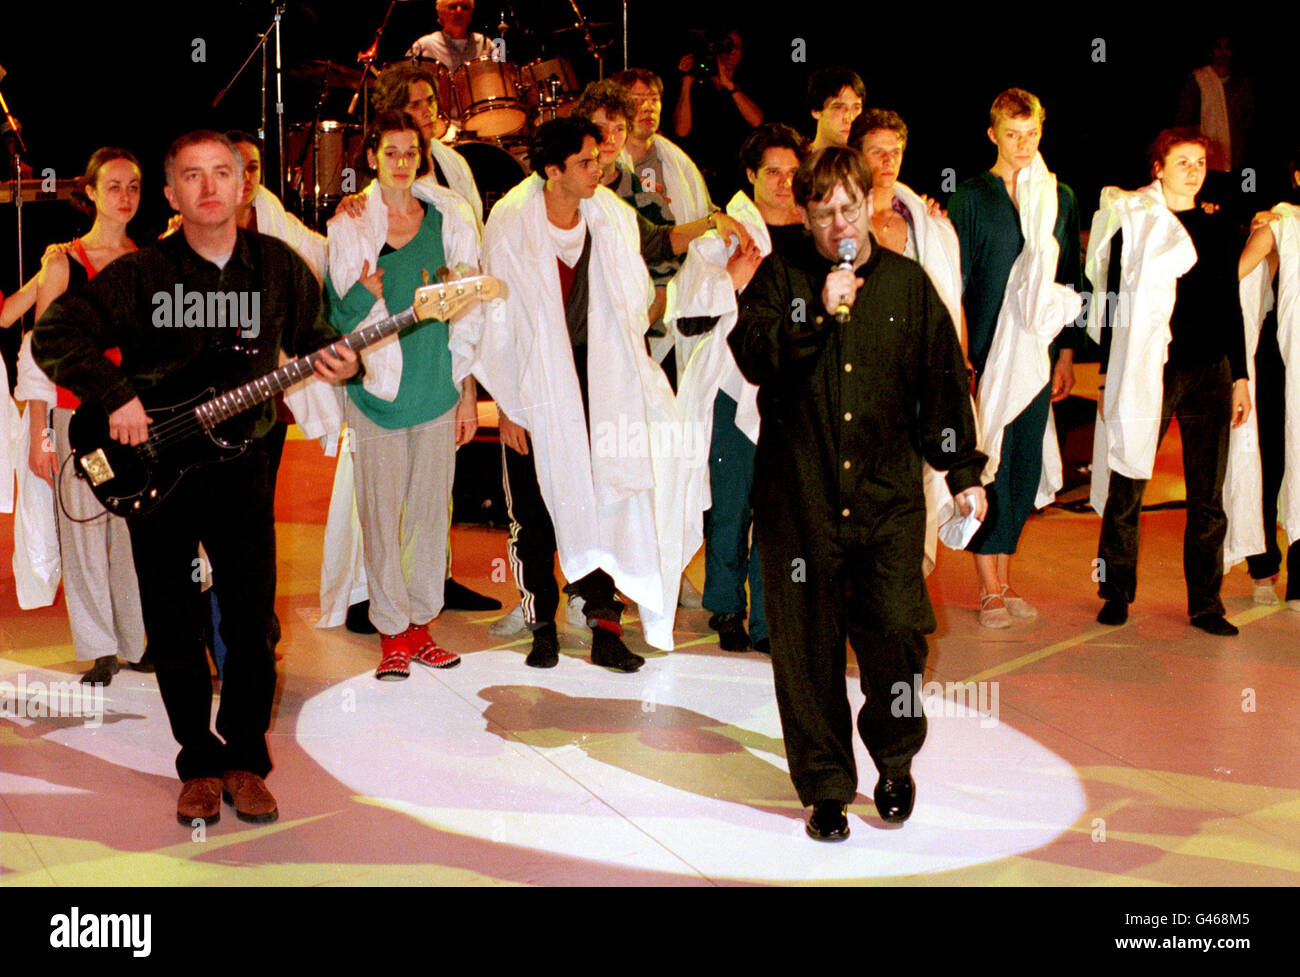 PARIS : 19/1/97 : ELTON JOHN CHANTE 'The show must go on' AVEC GROUPE ROCK QUEEN AU THÉÂTRE NATIONAL À PARIS. PA NEWS PHOTO DE DAVE CHESKIN. Banque D'Images